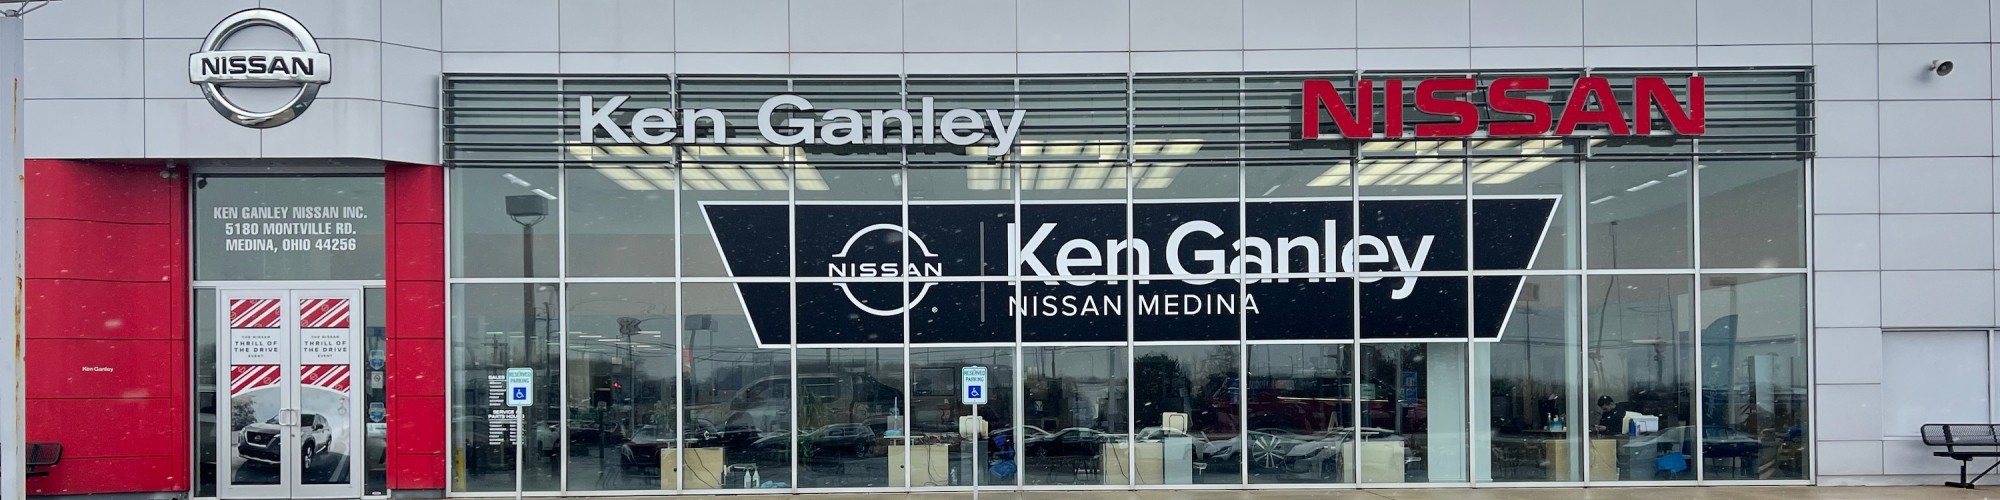 Ken Ganley Nissan Medina